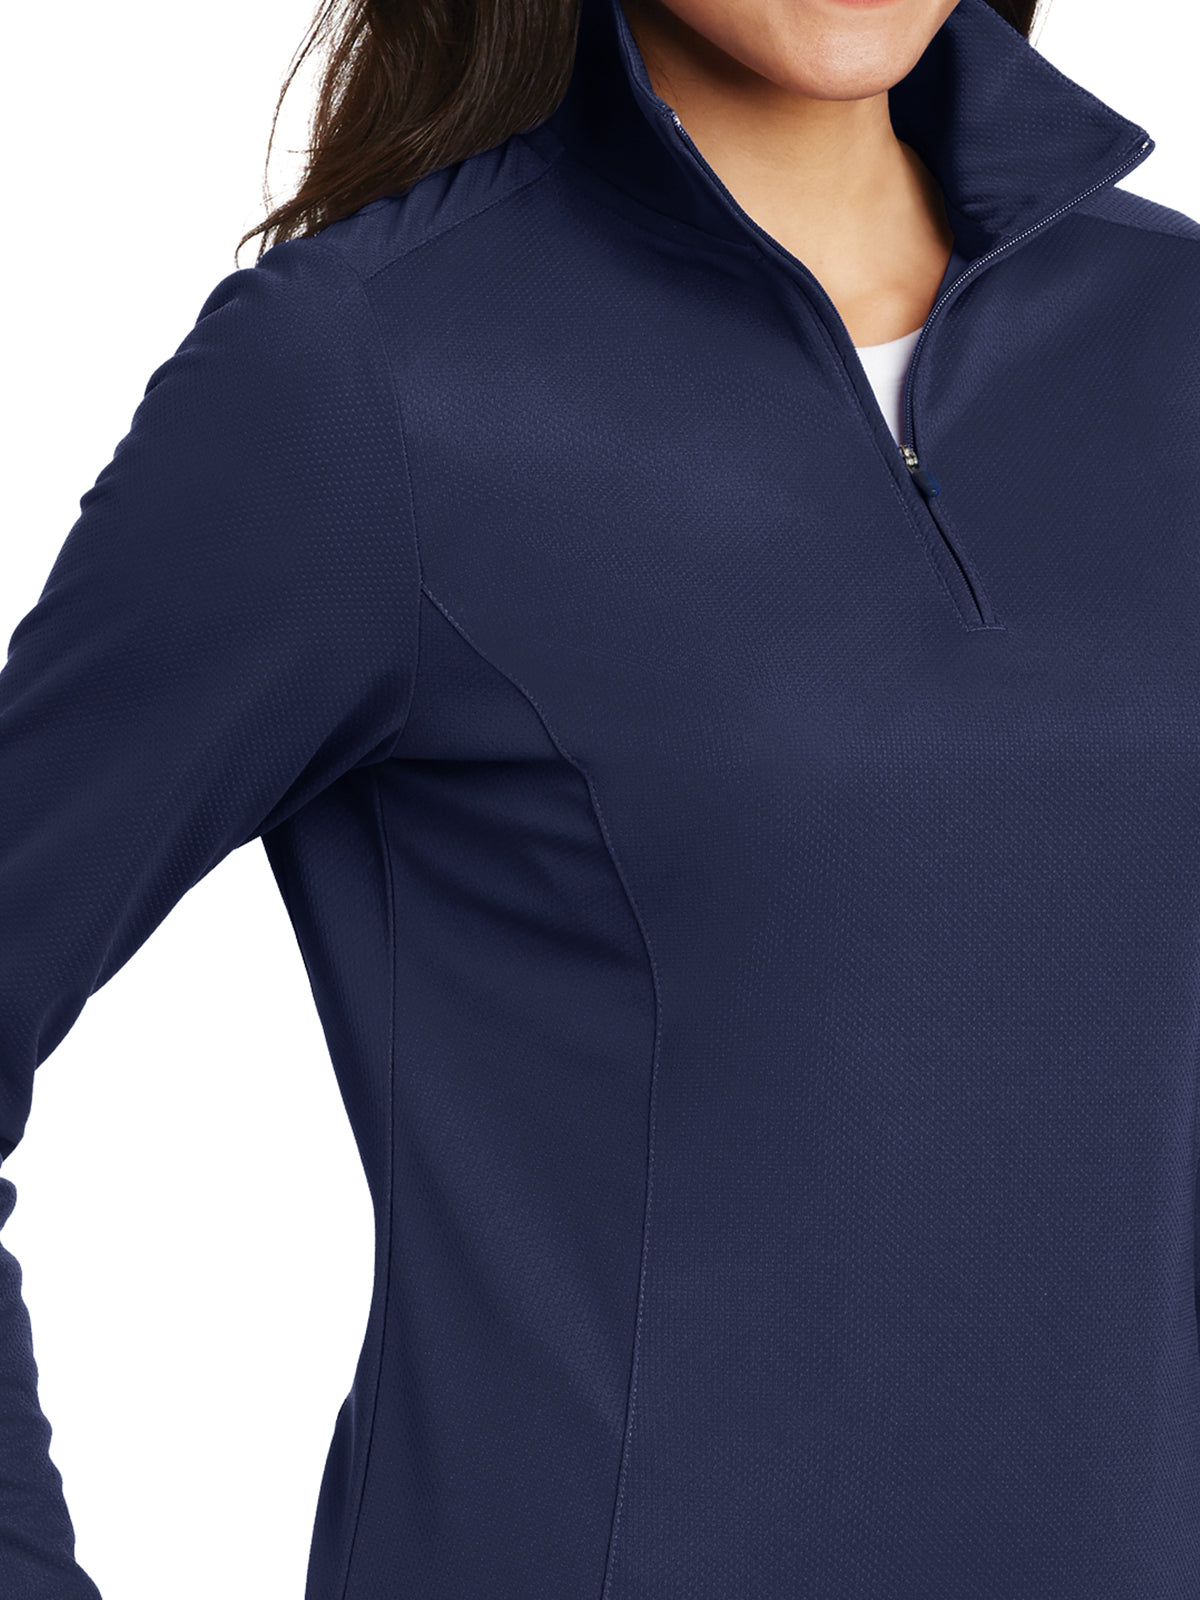 Women's Pinpoint Mesh Half-Zip Pullover